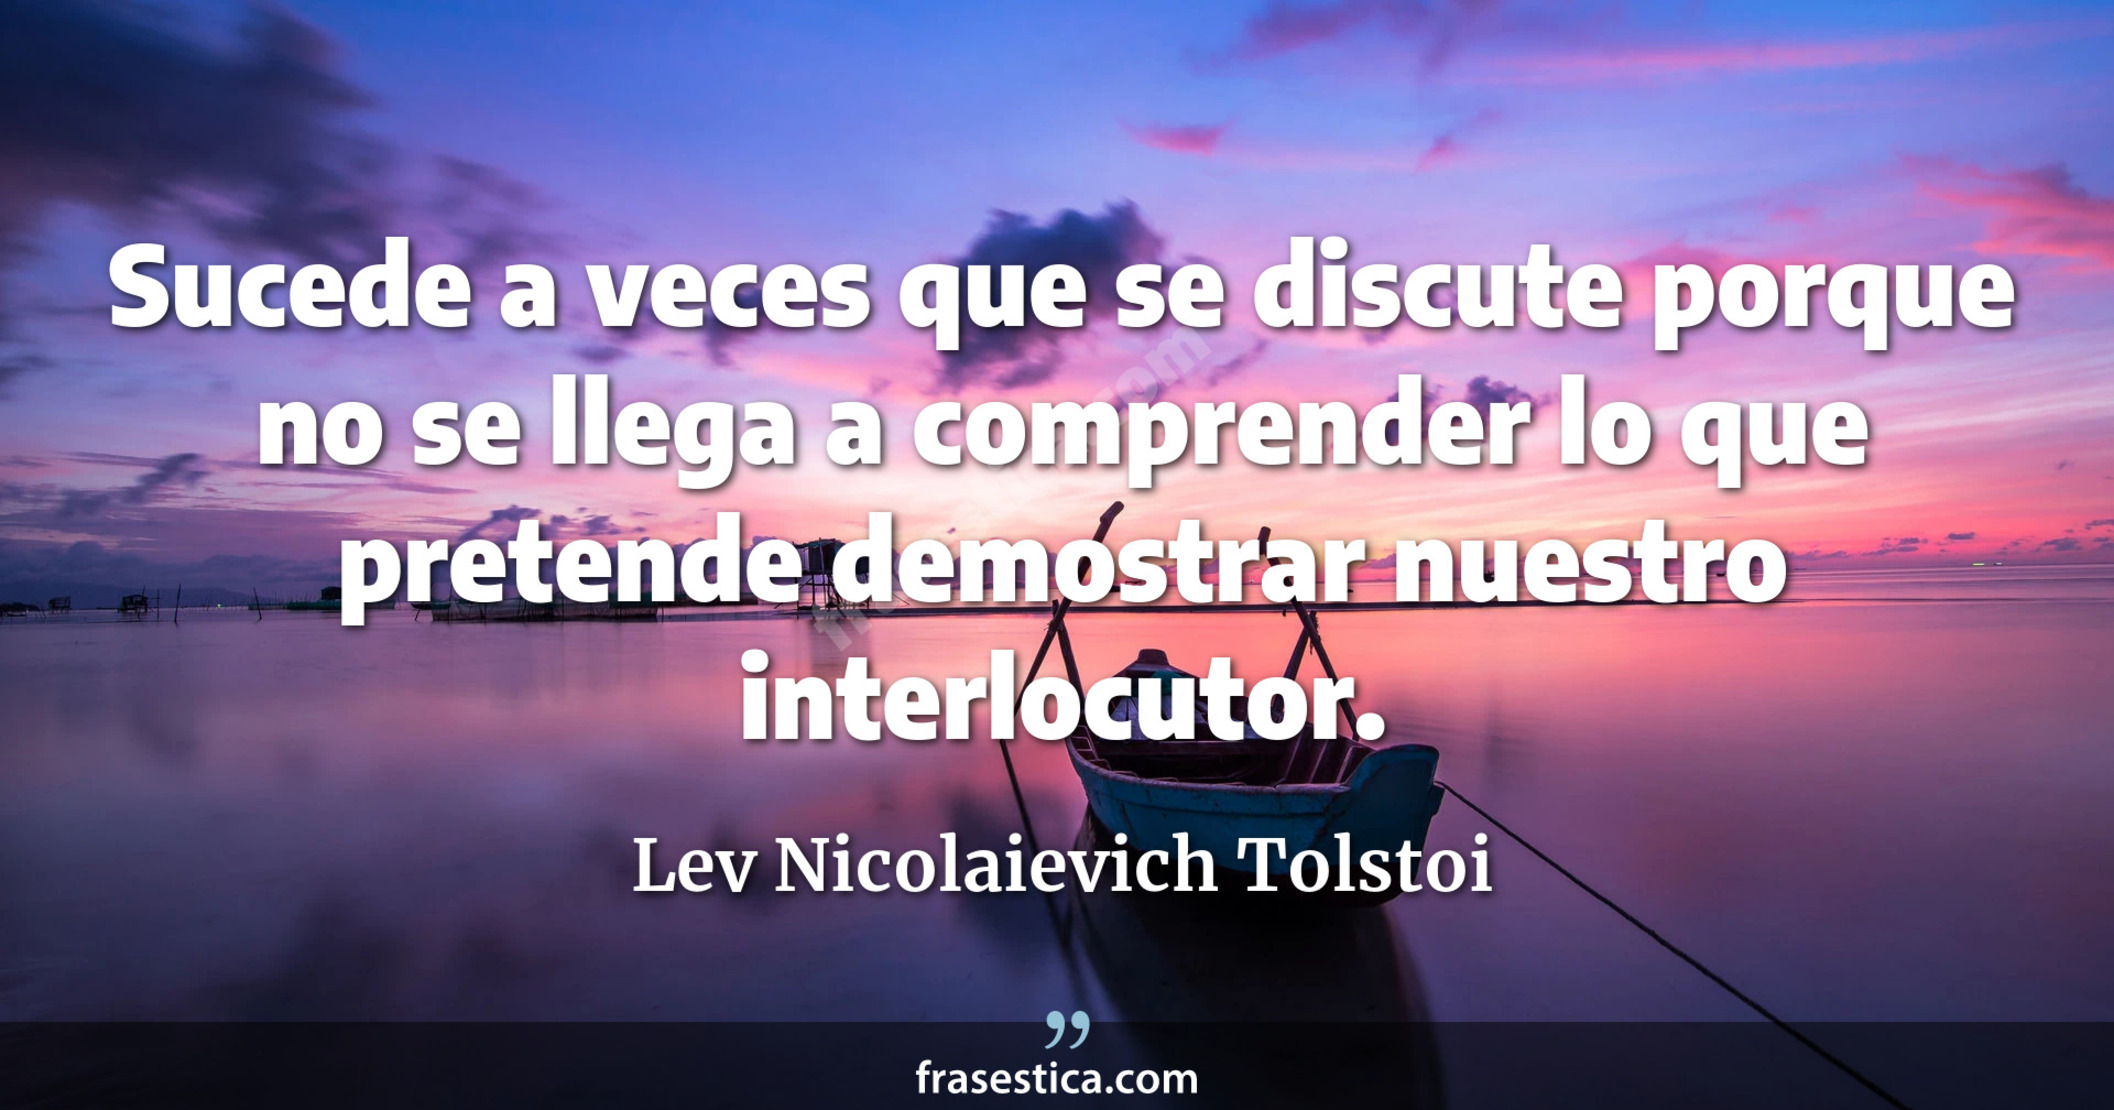 Sucede a veces que se discute porque no se llega a comprender lo que pretende demostrar nuestro interlocutor. - Lev Nicolaievich Tolstoi